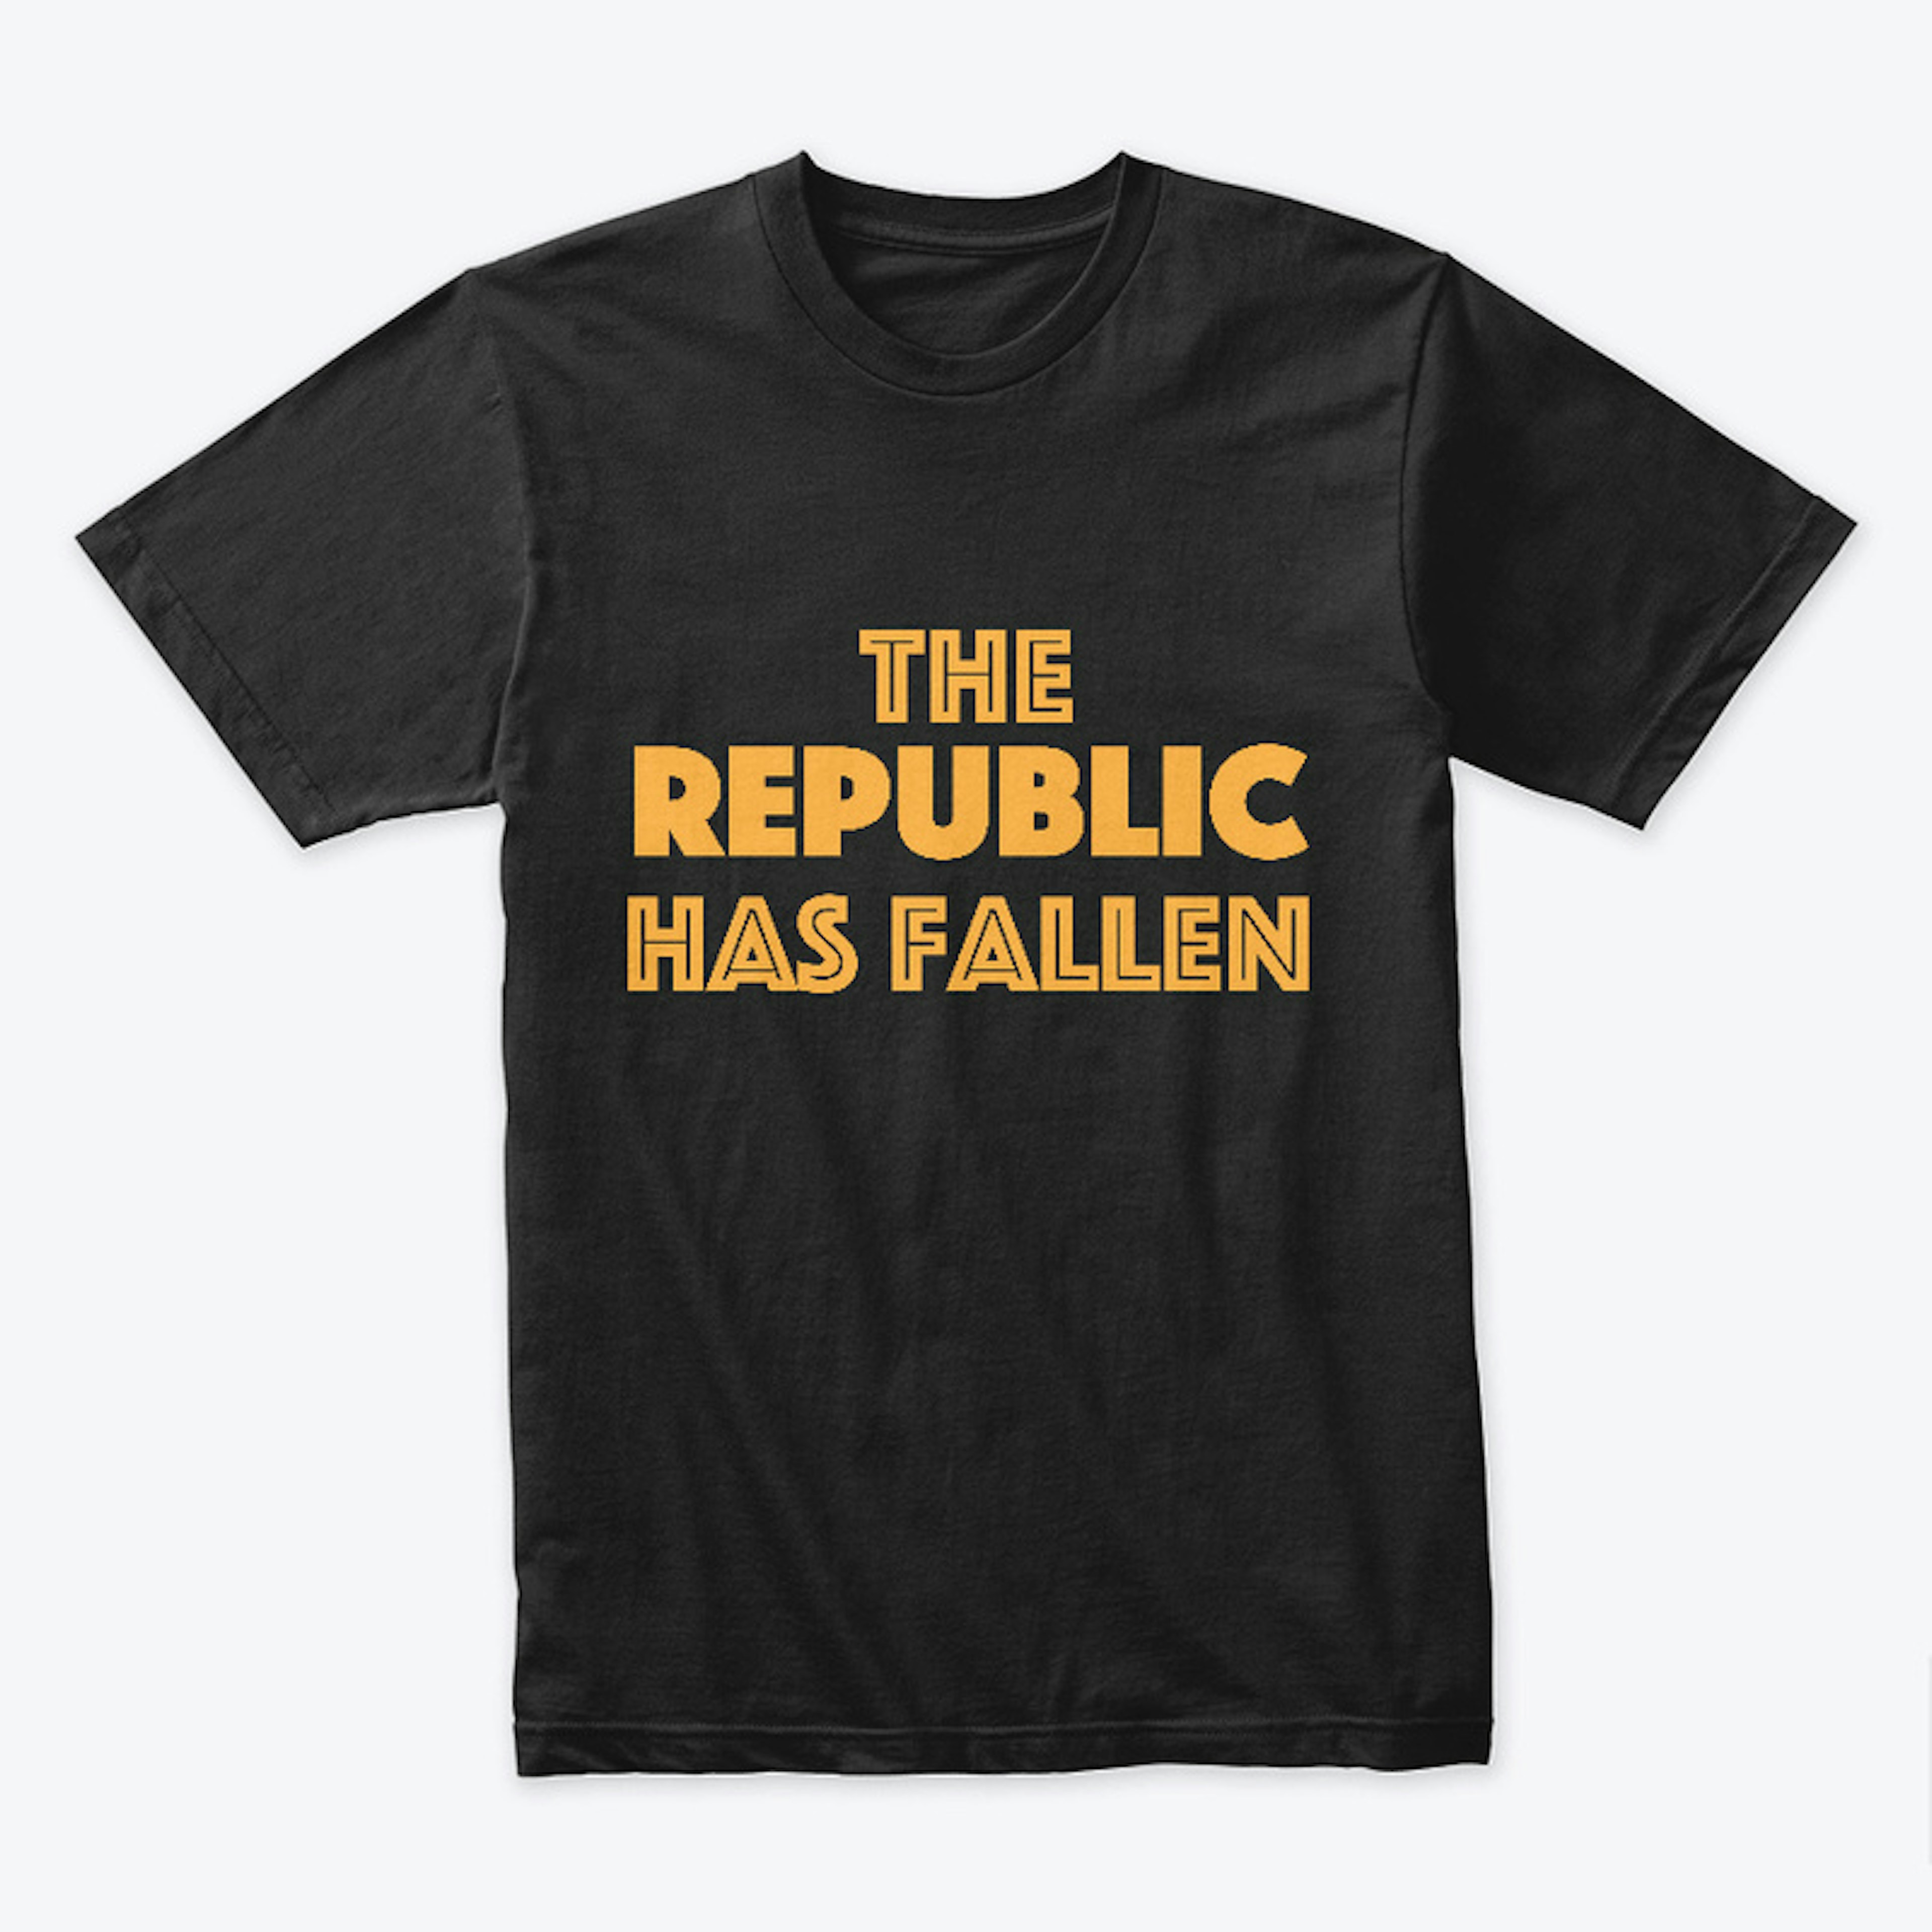 The Republic has fallen T-shirt